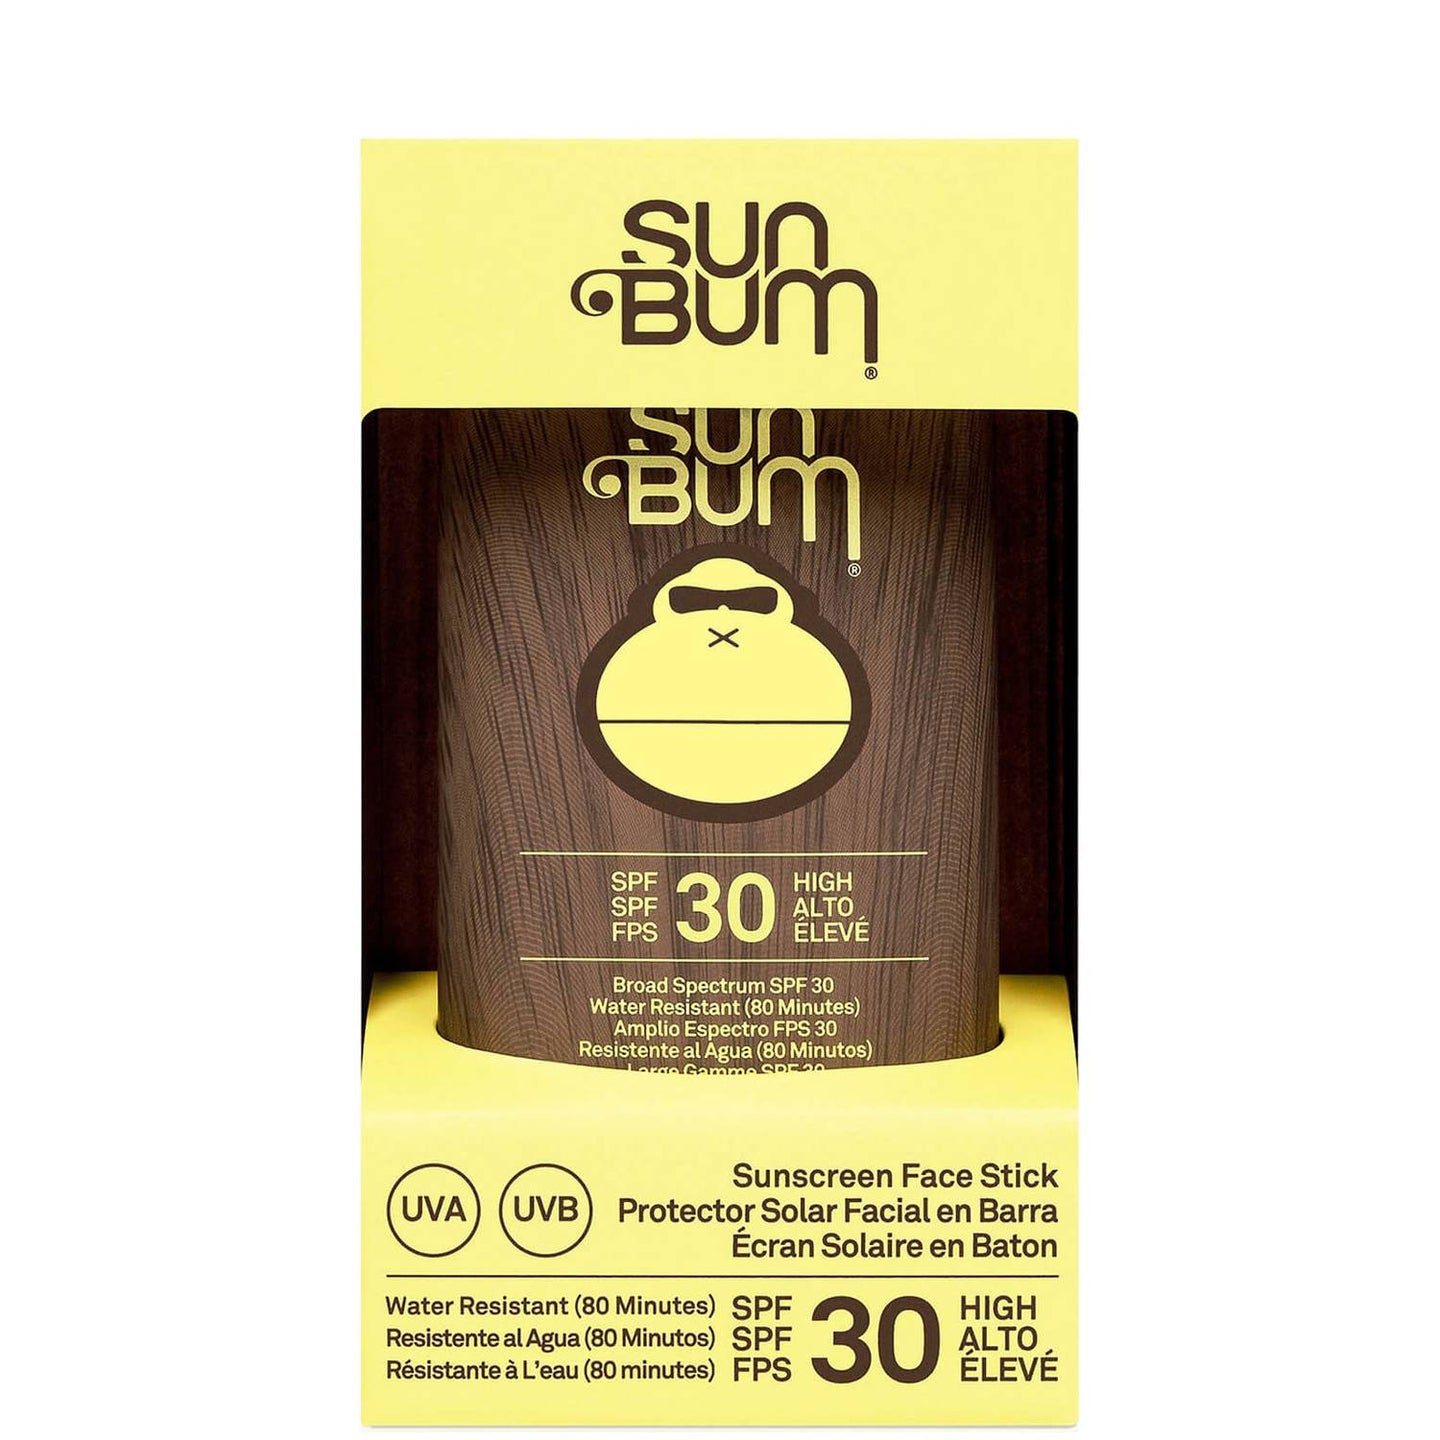 Sun Bum - Original SPF 30 Face Stick